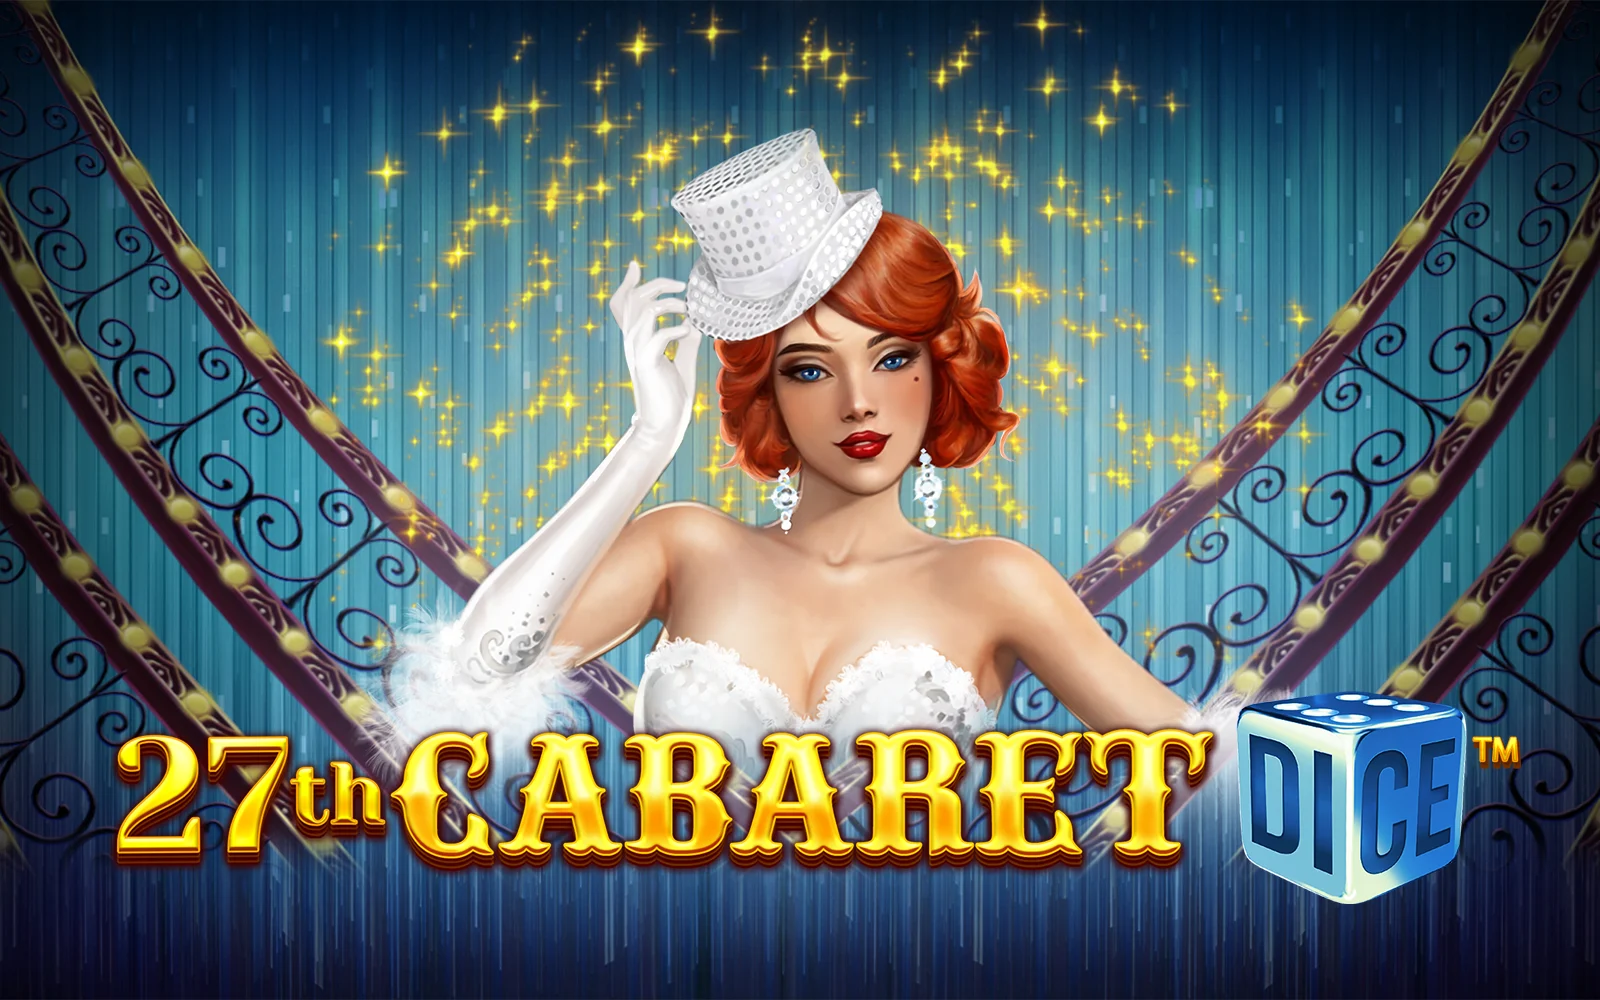 Joacă 27th Cabaret Dice în cazinoul online Starcasino.be